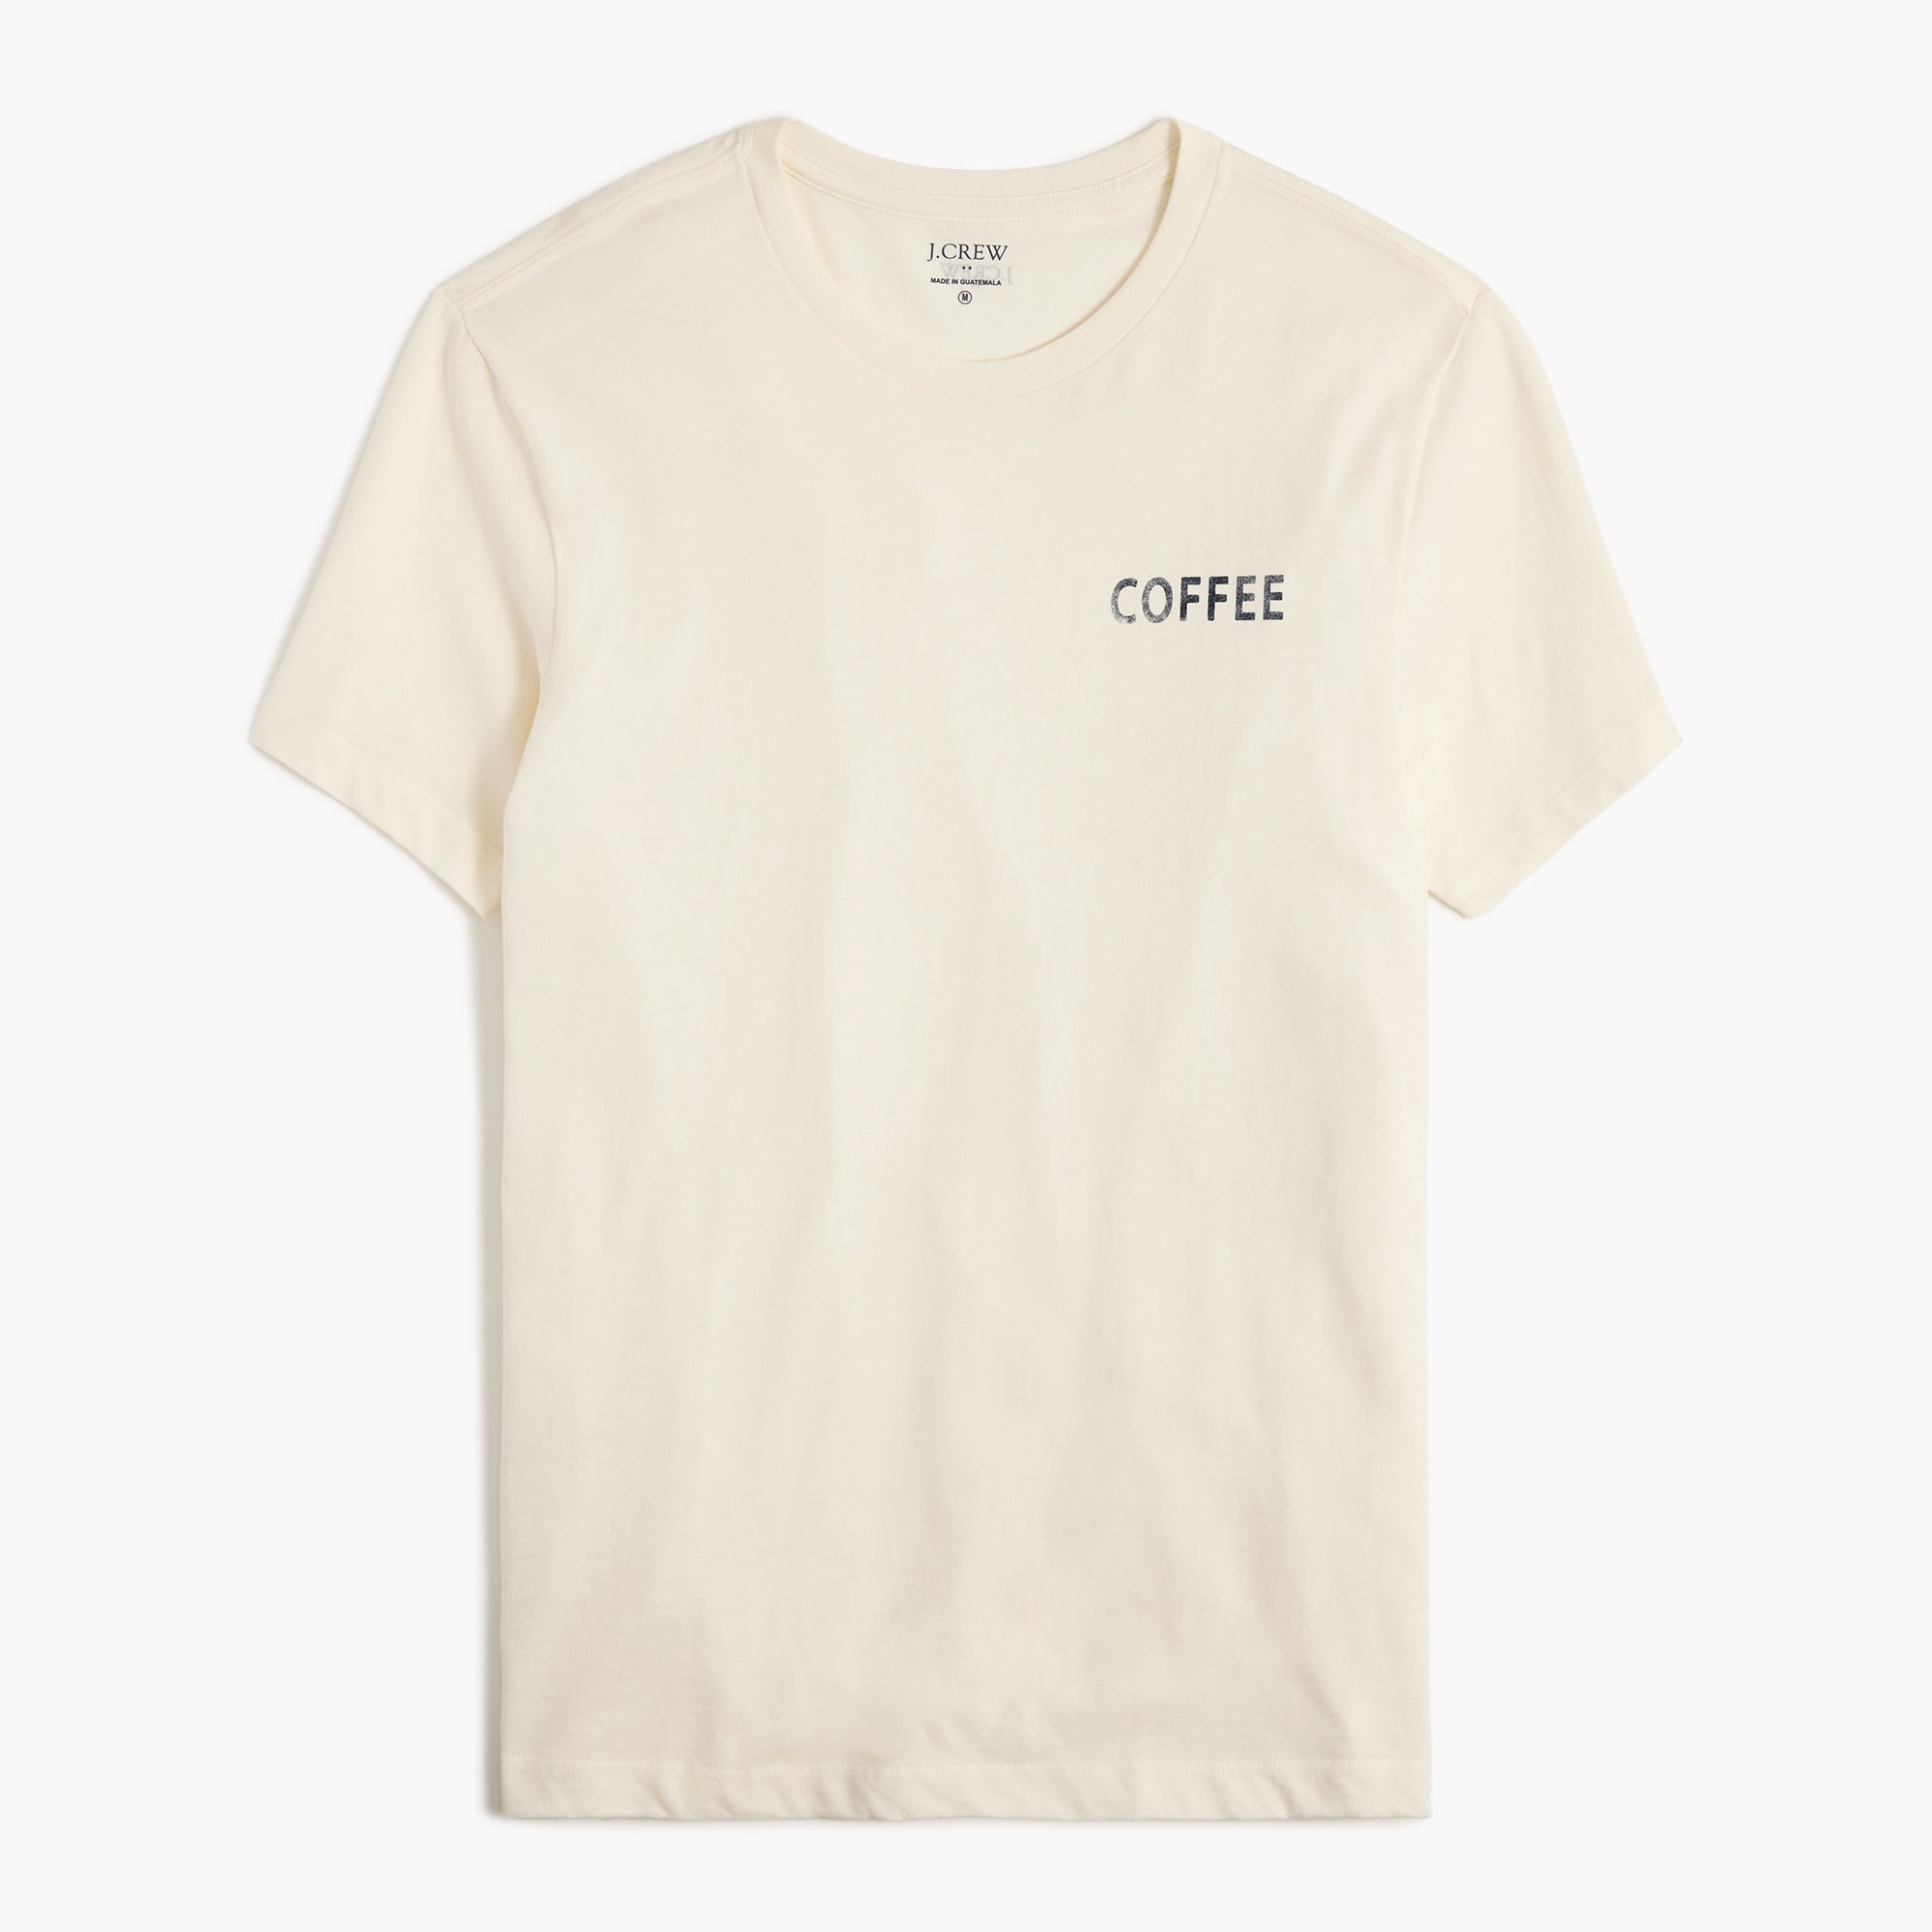 Coffee graphic tee